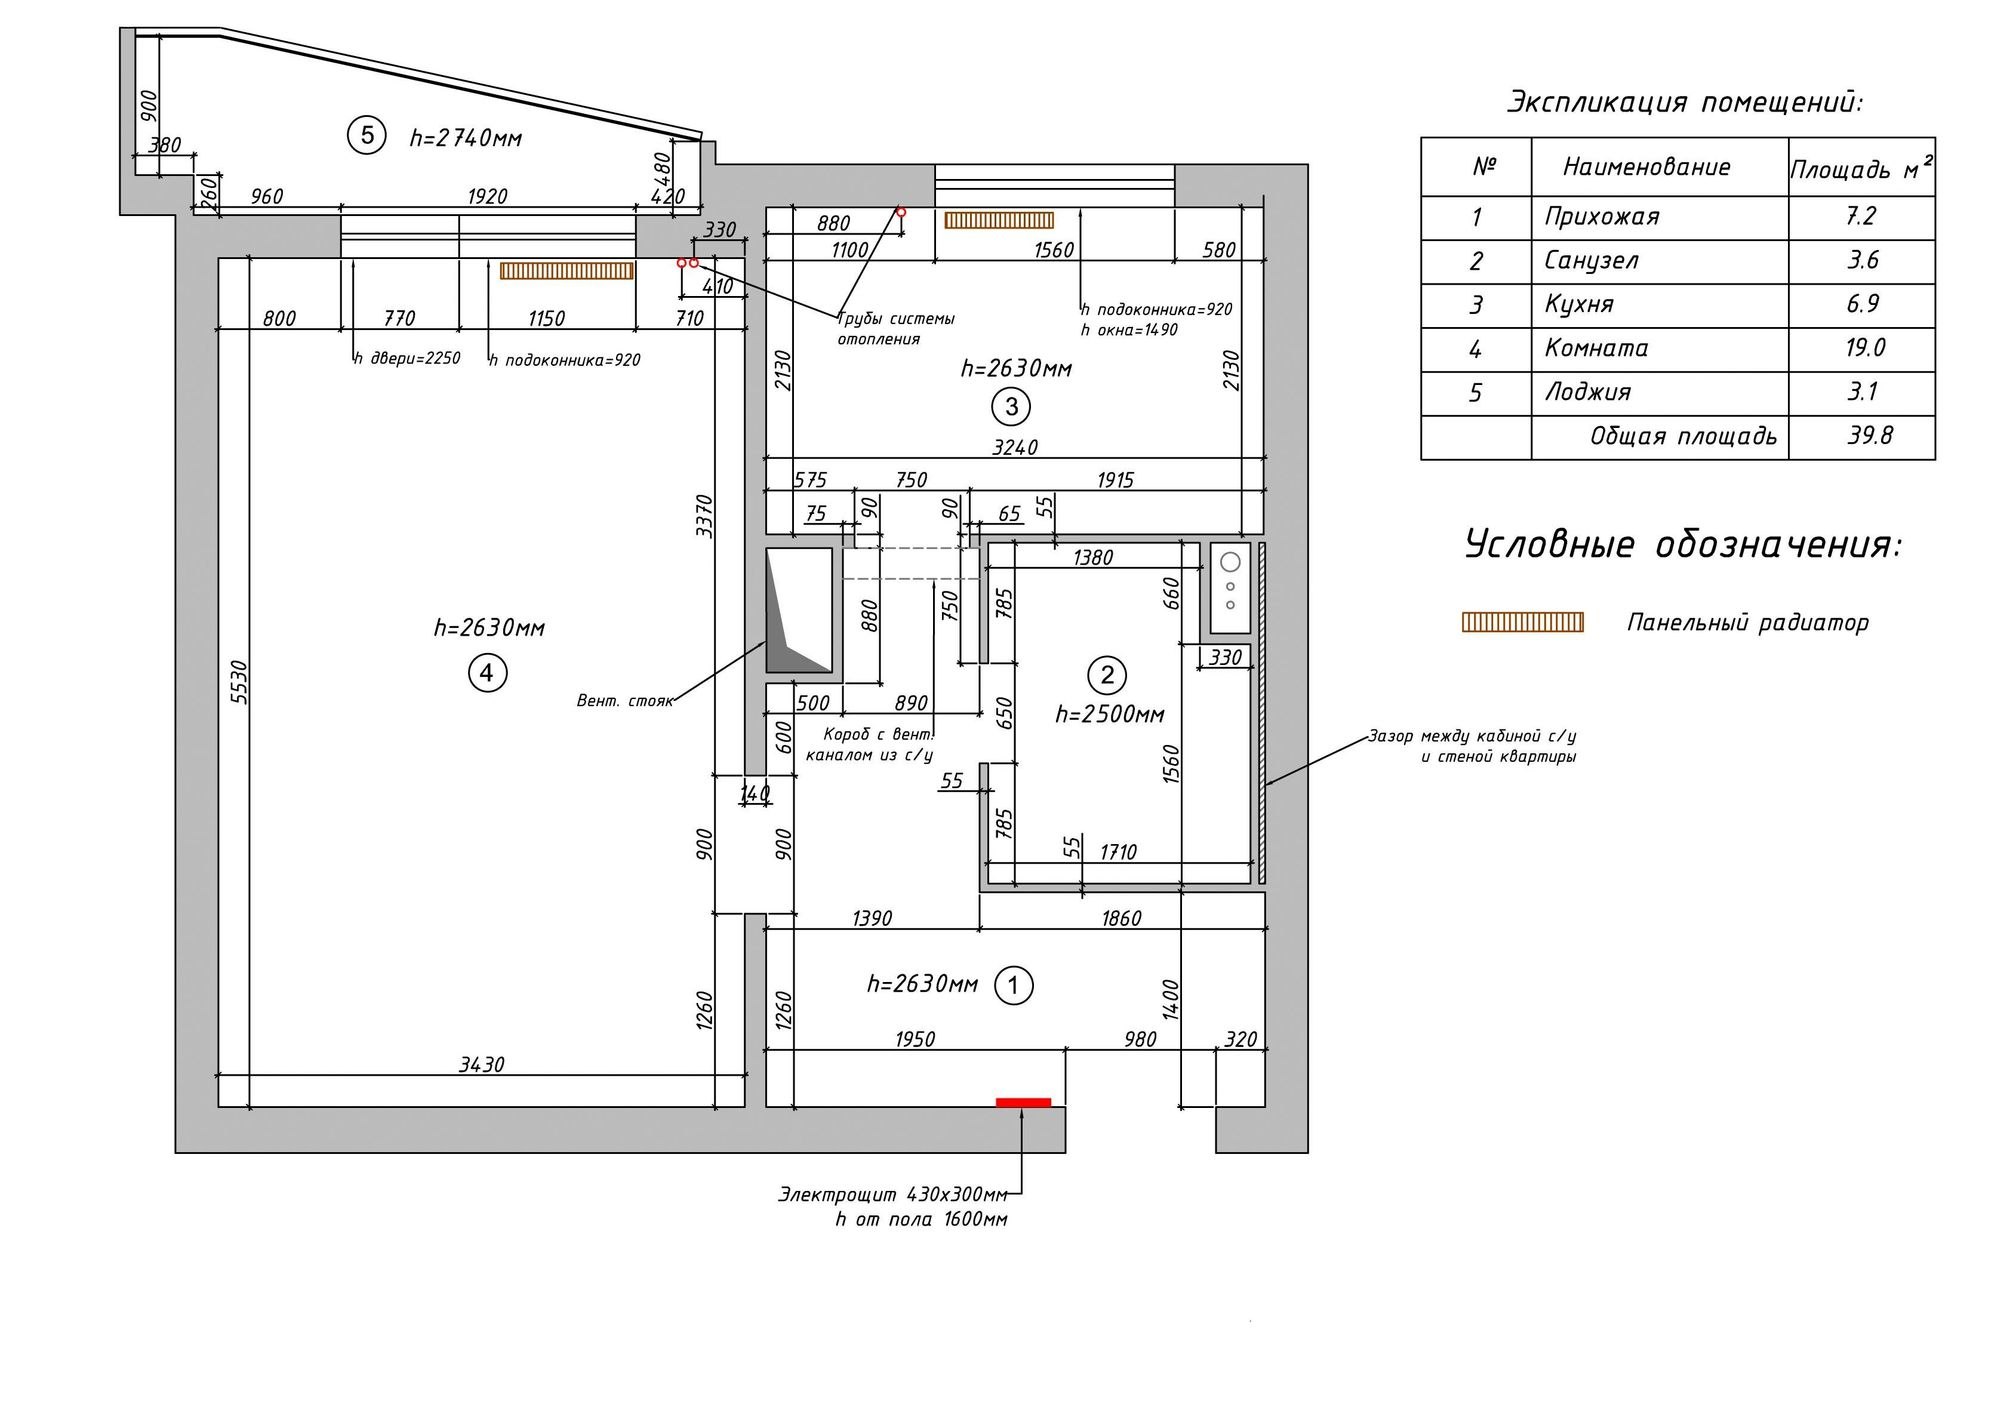 Квартира п б. П-44 однокомнатная квартира планировка с размерами. П-44 планировка 1 комнатная с размерами. П-44 планировка 1 комнатная квартира с размерами. Однушка п-44 планировка с размерами.